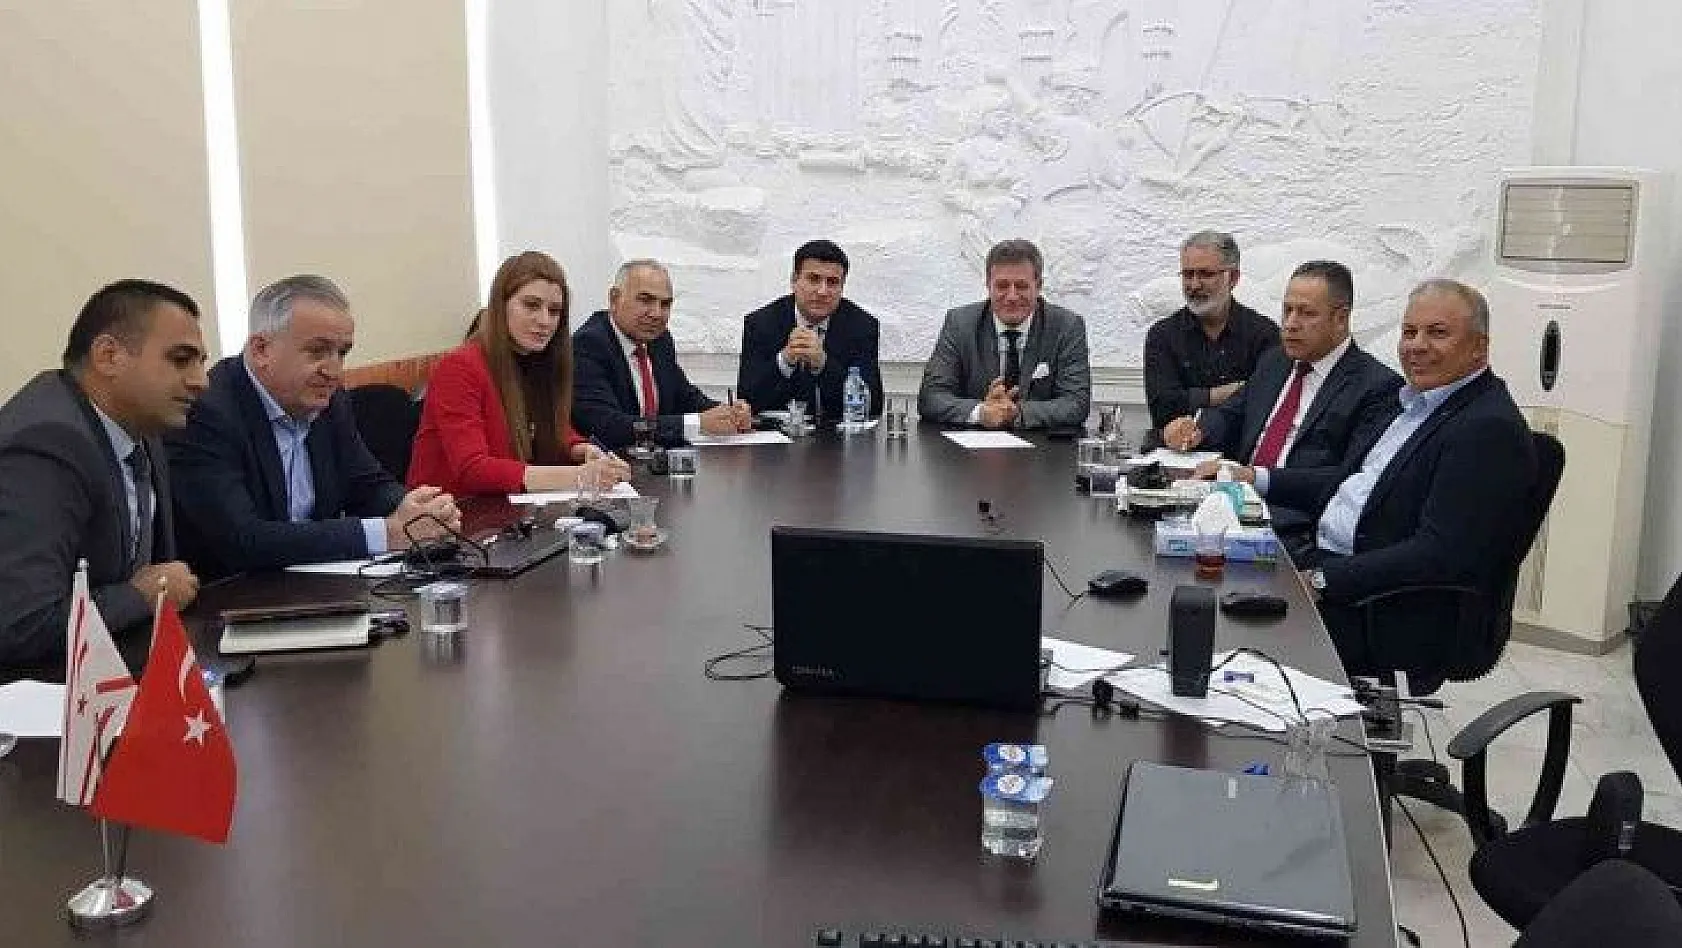 KKTC Bayındırlık ve Ulaştırma Bakanı Arıklı'dan 'Kayseri Büyükşehir' övgüsü